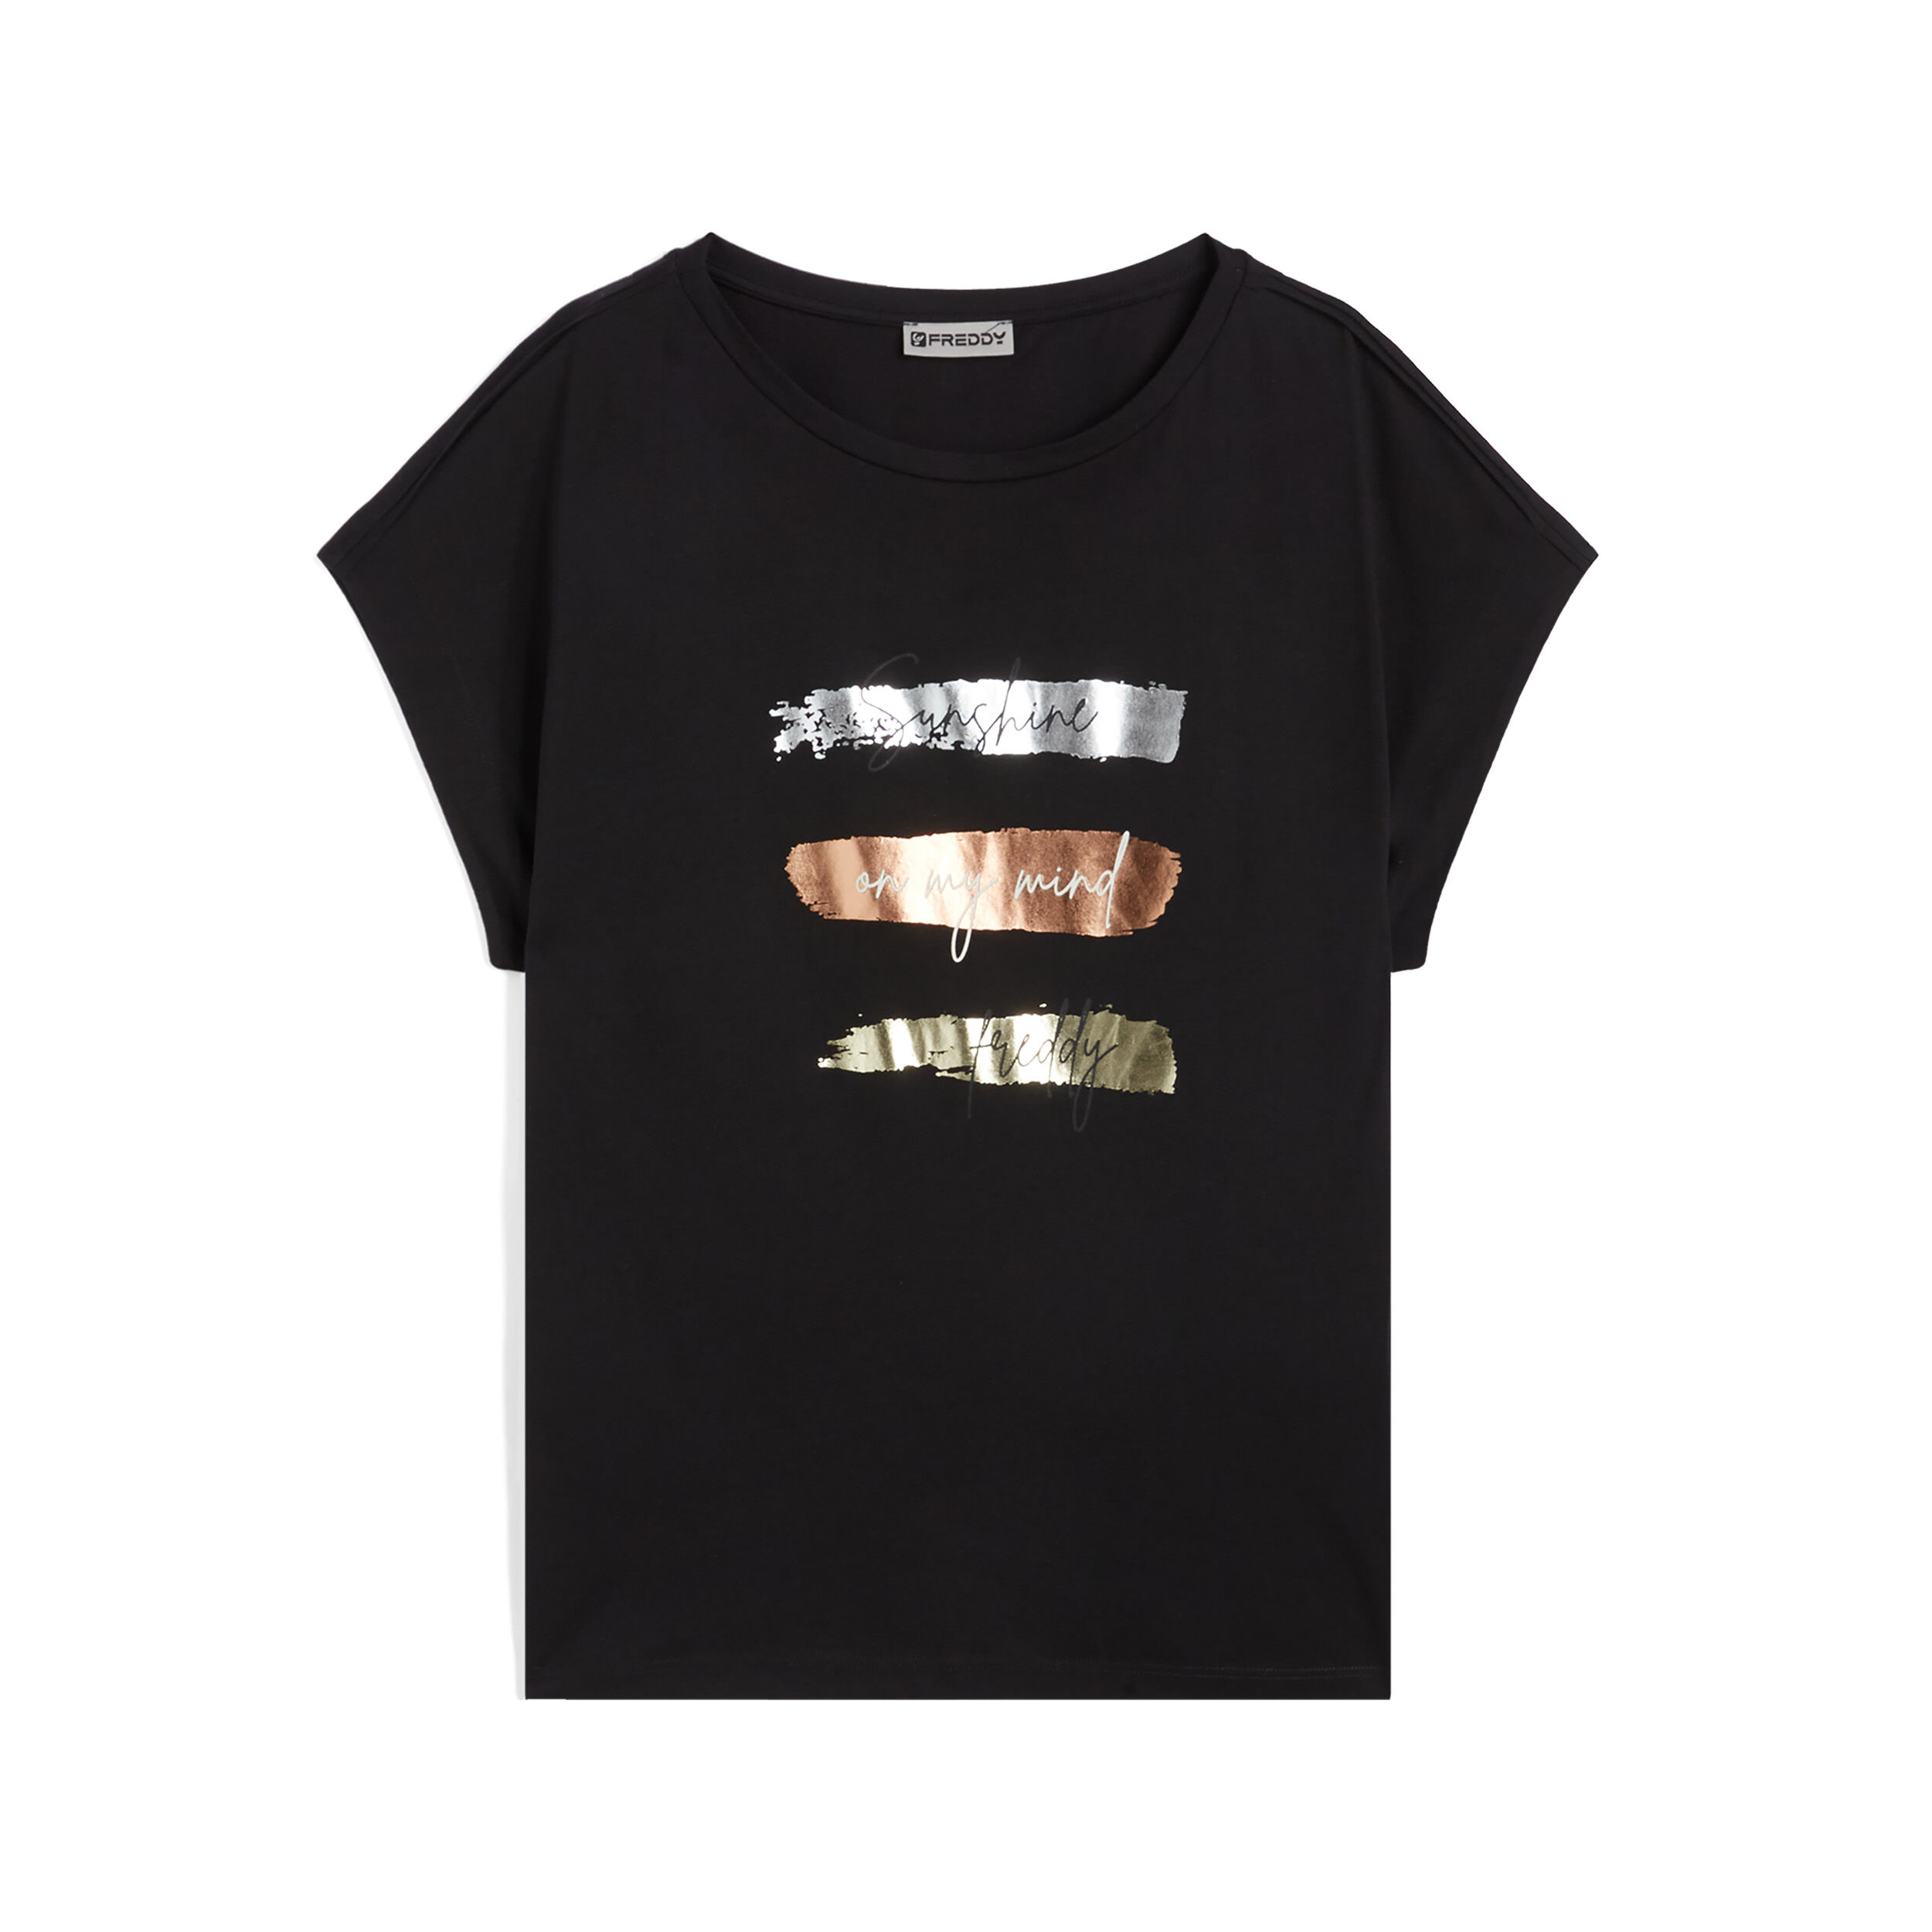 Freddy T-shirt da donna in jersey modal con stampe metallizzate Nero Donna Extra Small